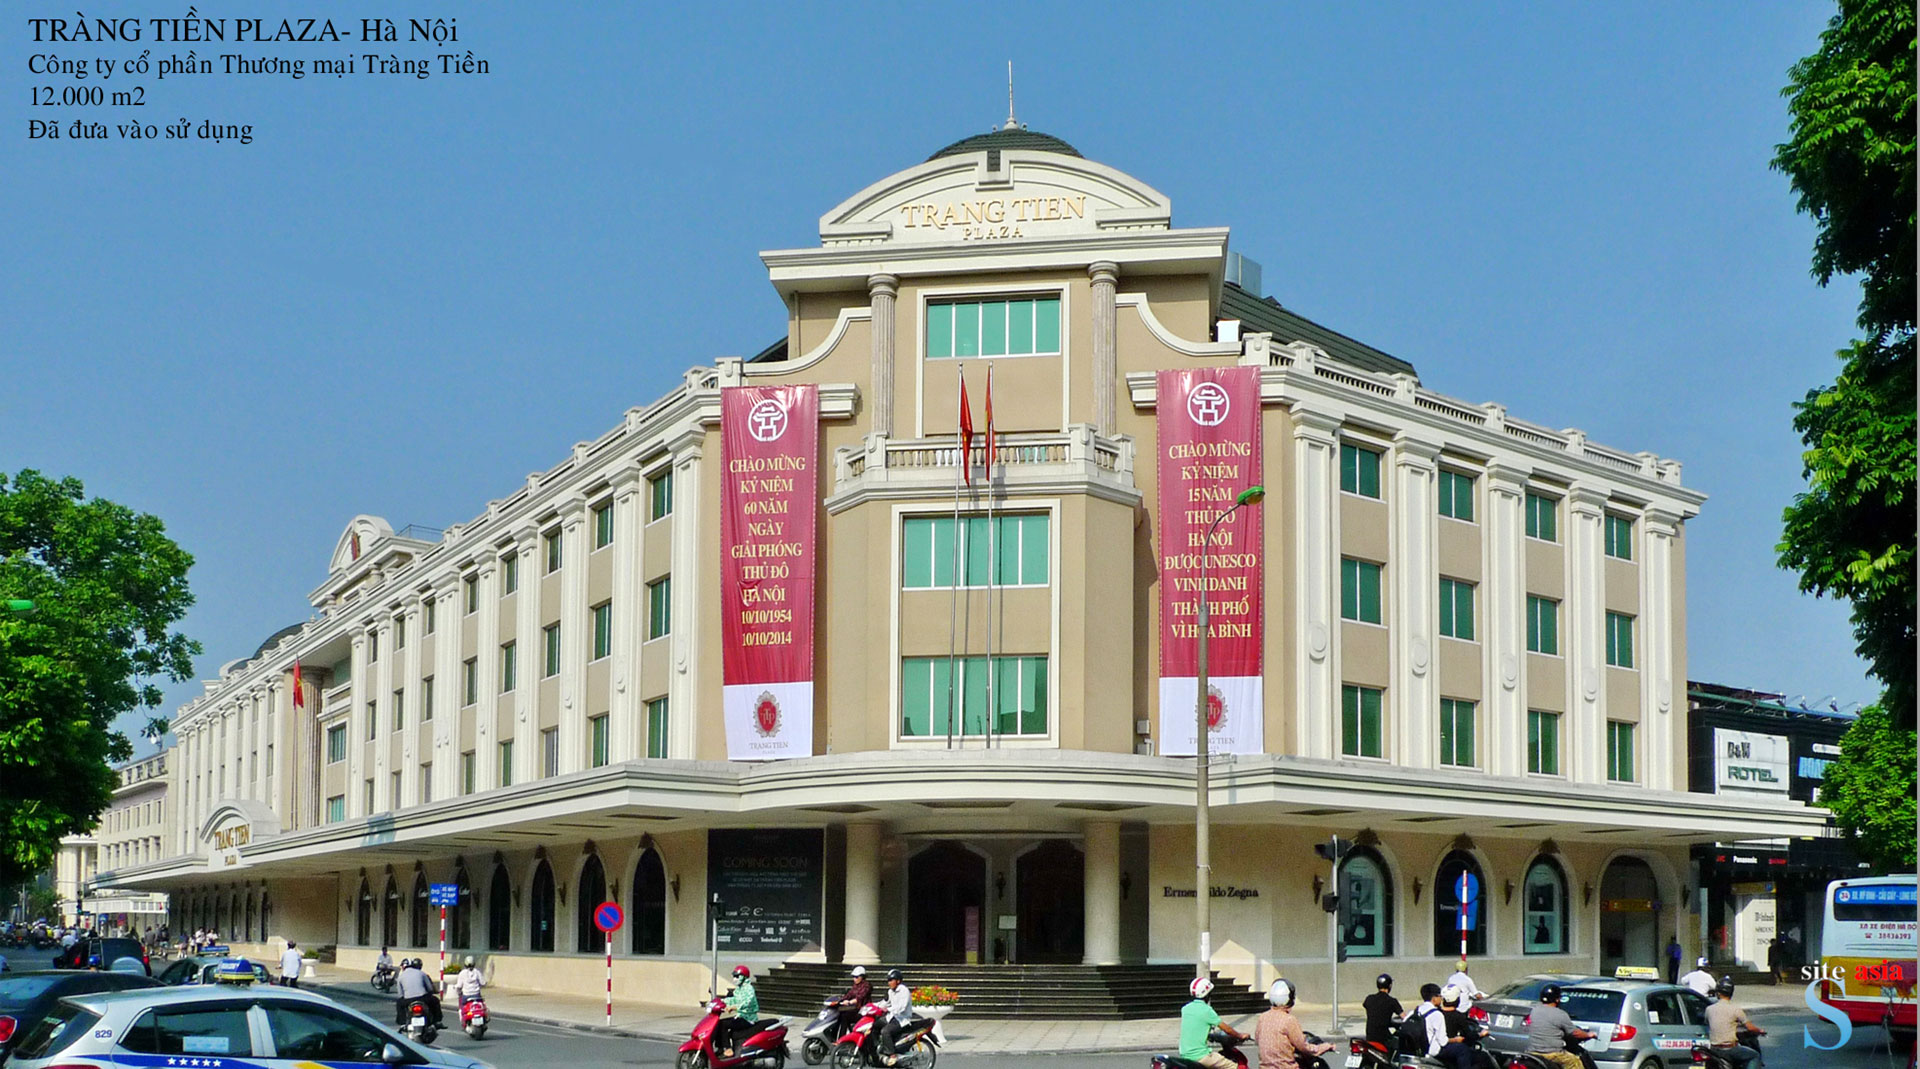 Trung tâm thương mại Tràng Tiền Plaza, Hà Nội